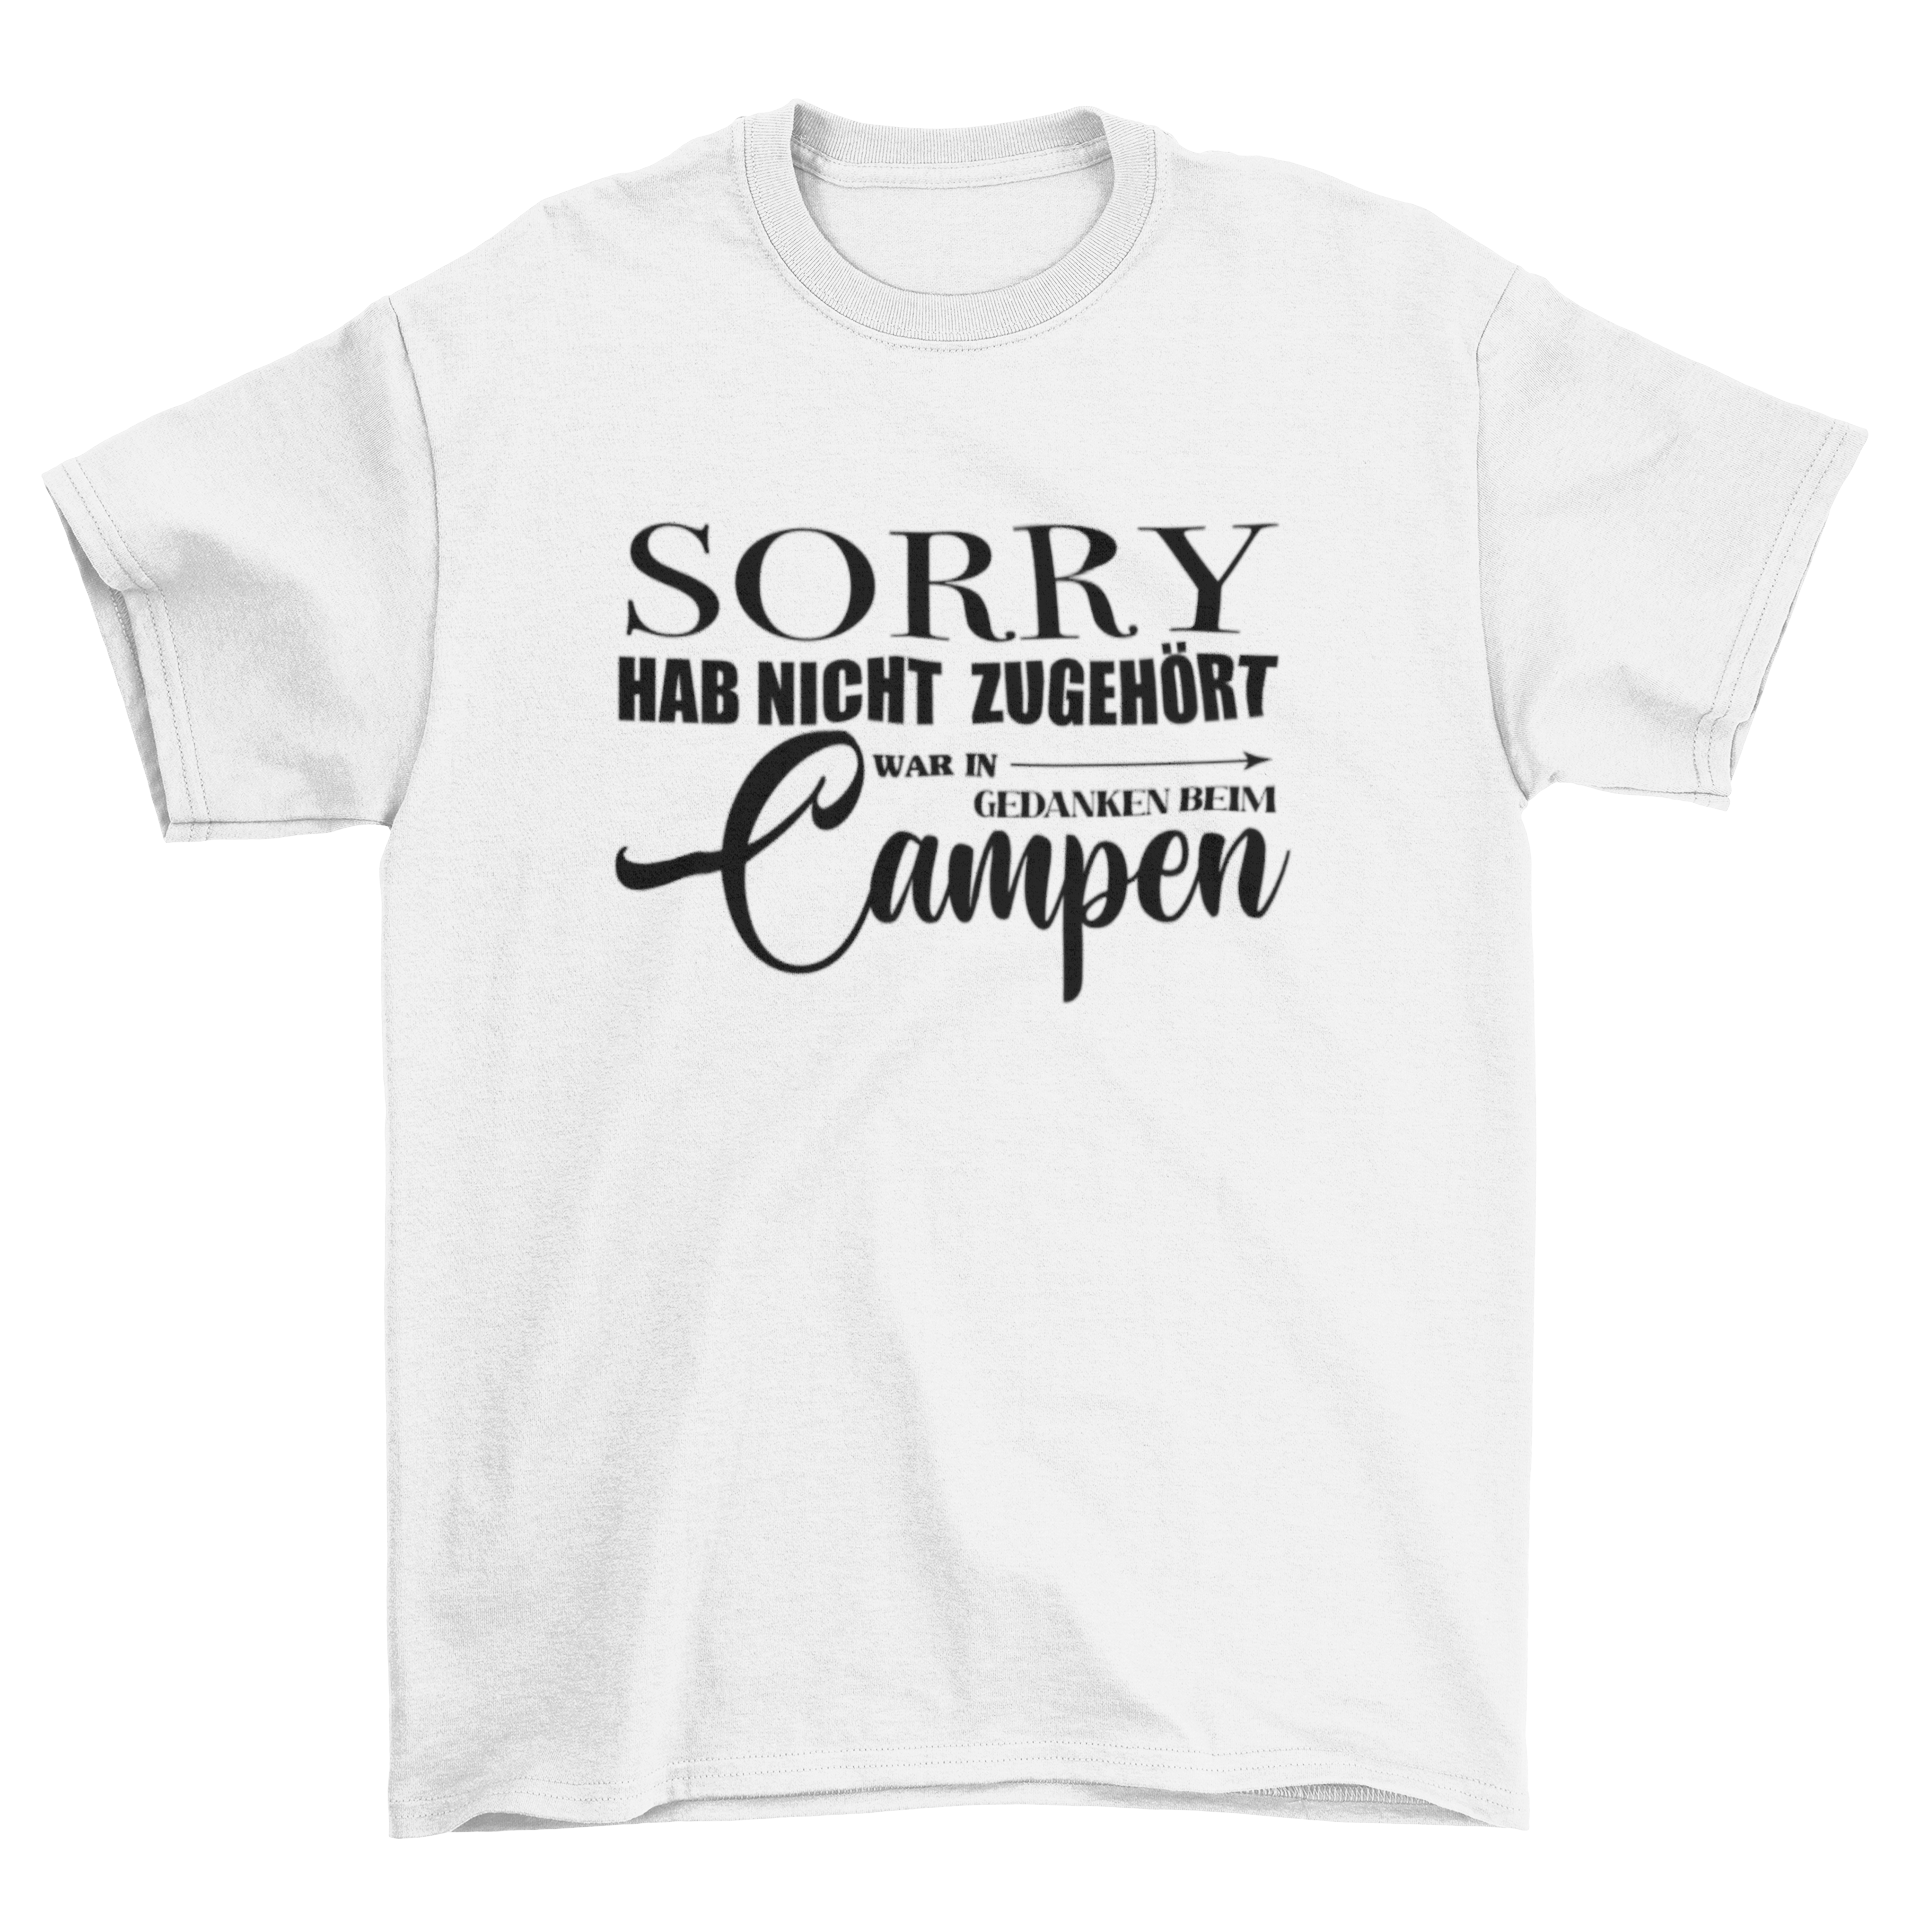 Sorry hab nicht zugehört  - T-Shirt